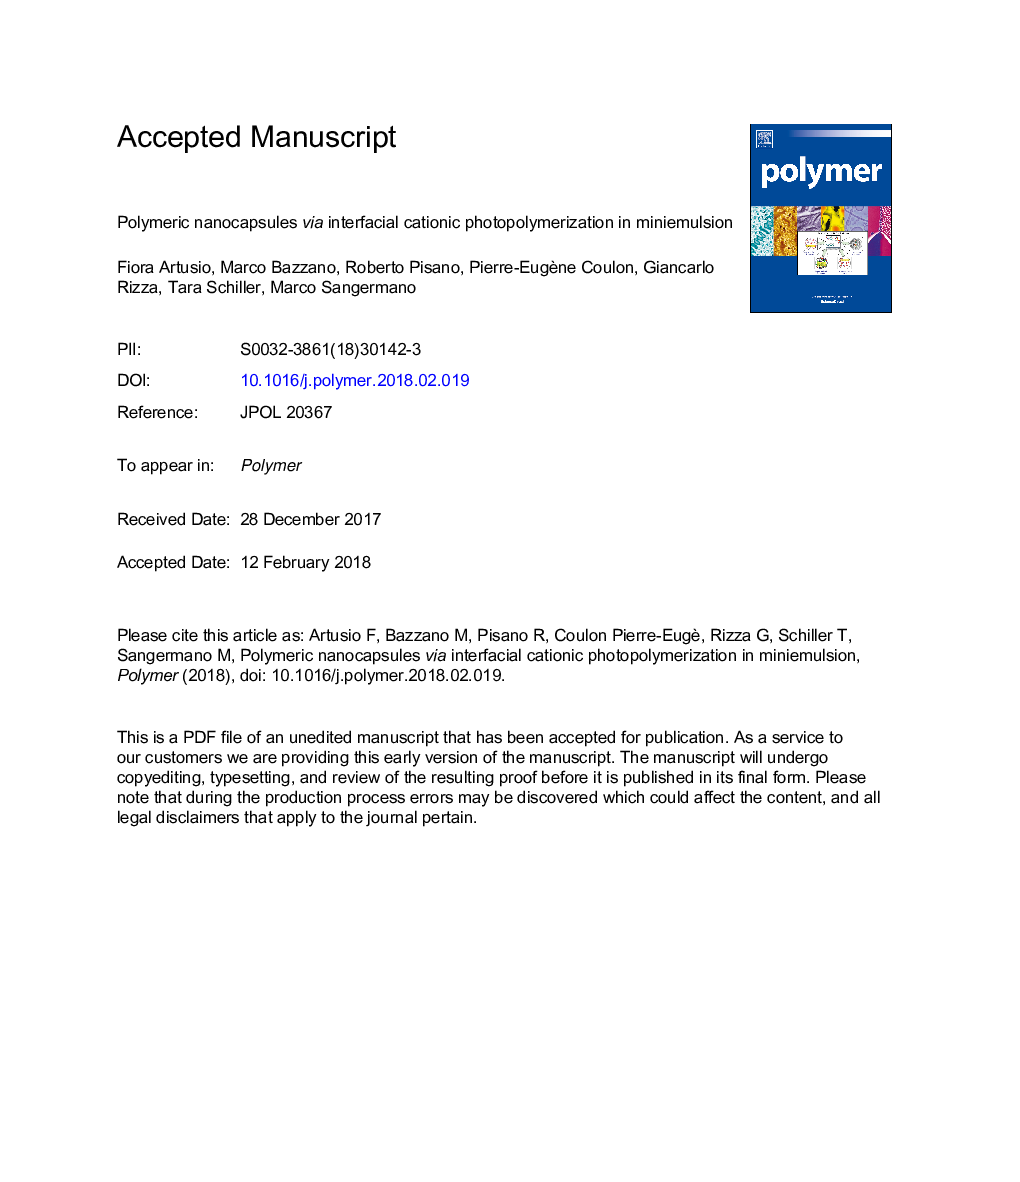 نانوکپسول های پلیمری با استفاده از فوم پلیمریسیون کاتیونی بین دو طرف در معادله استخوانی 